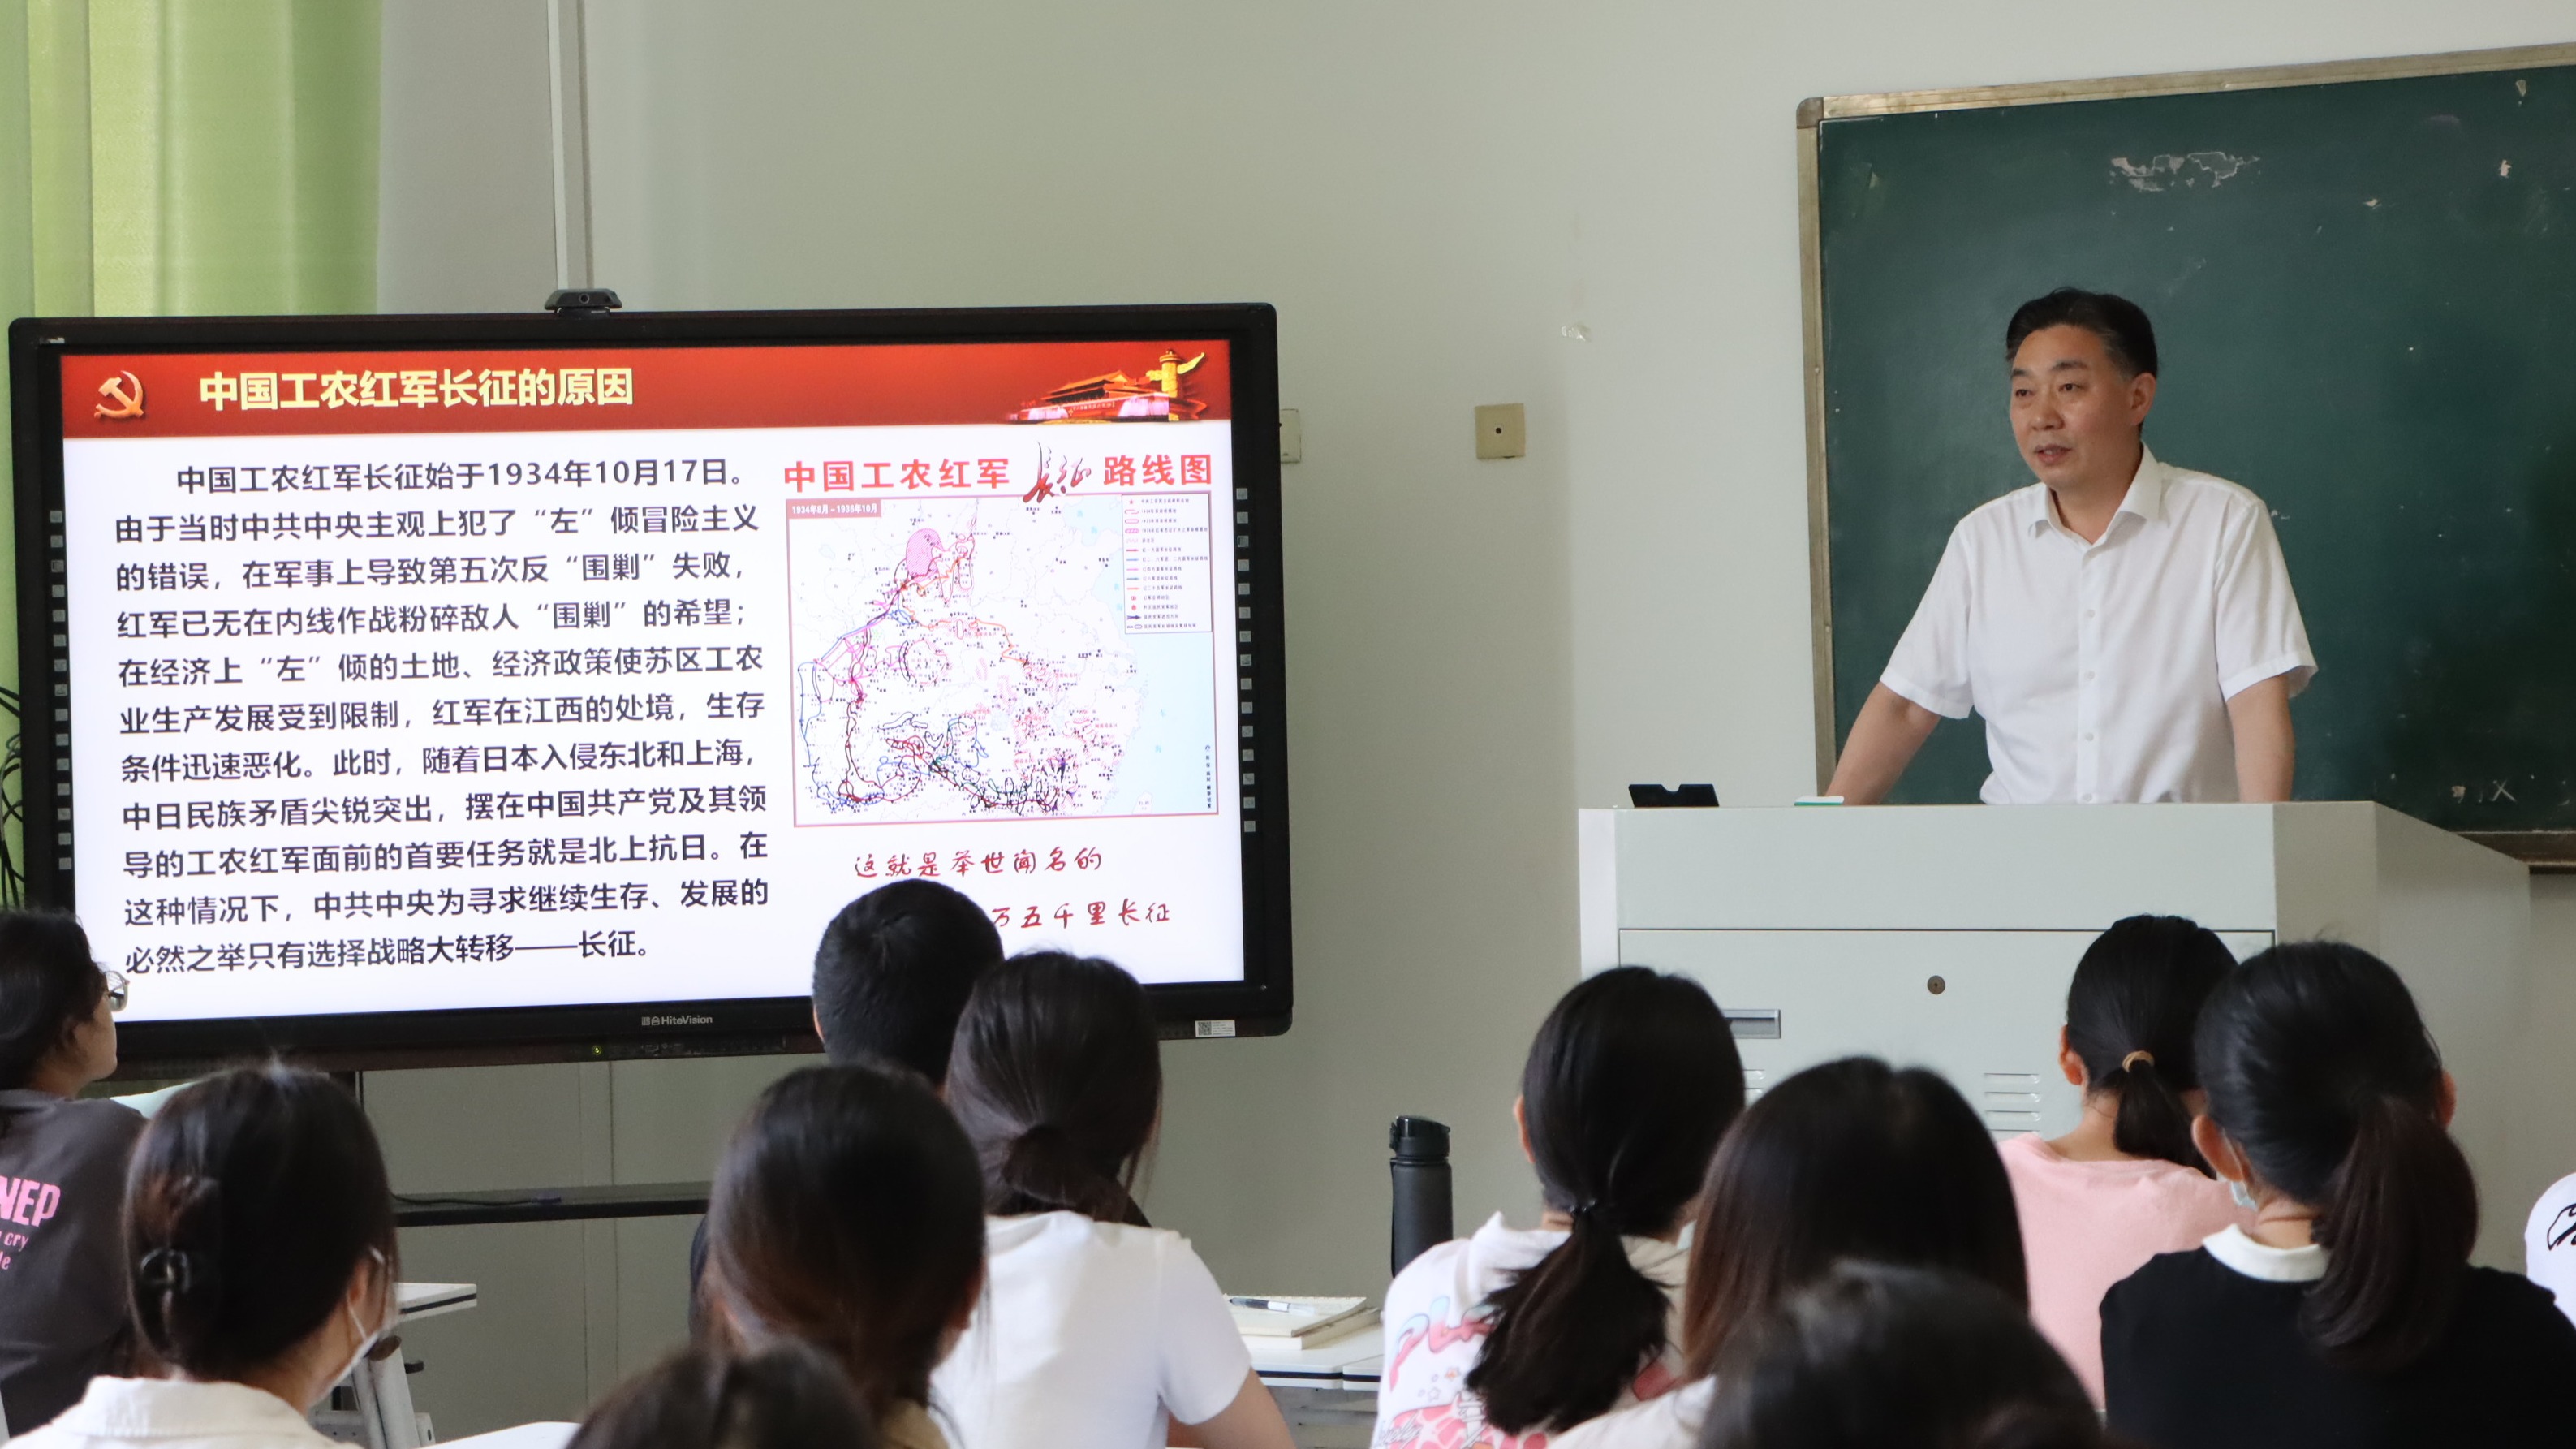 【转载】党委书记张志坚为马克思主义学院师生上思政课